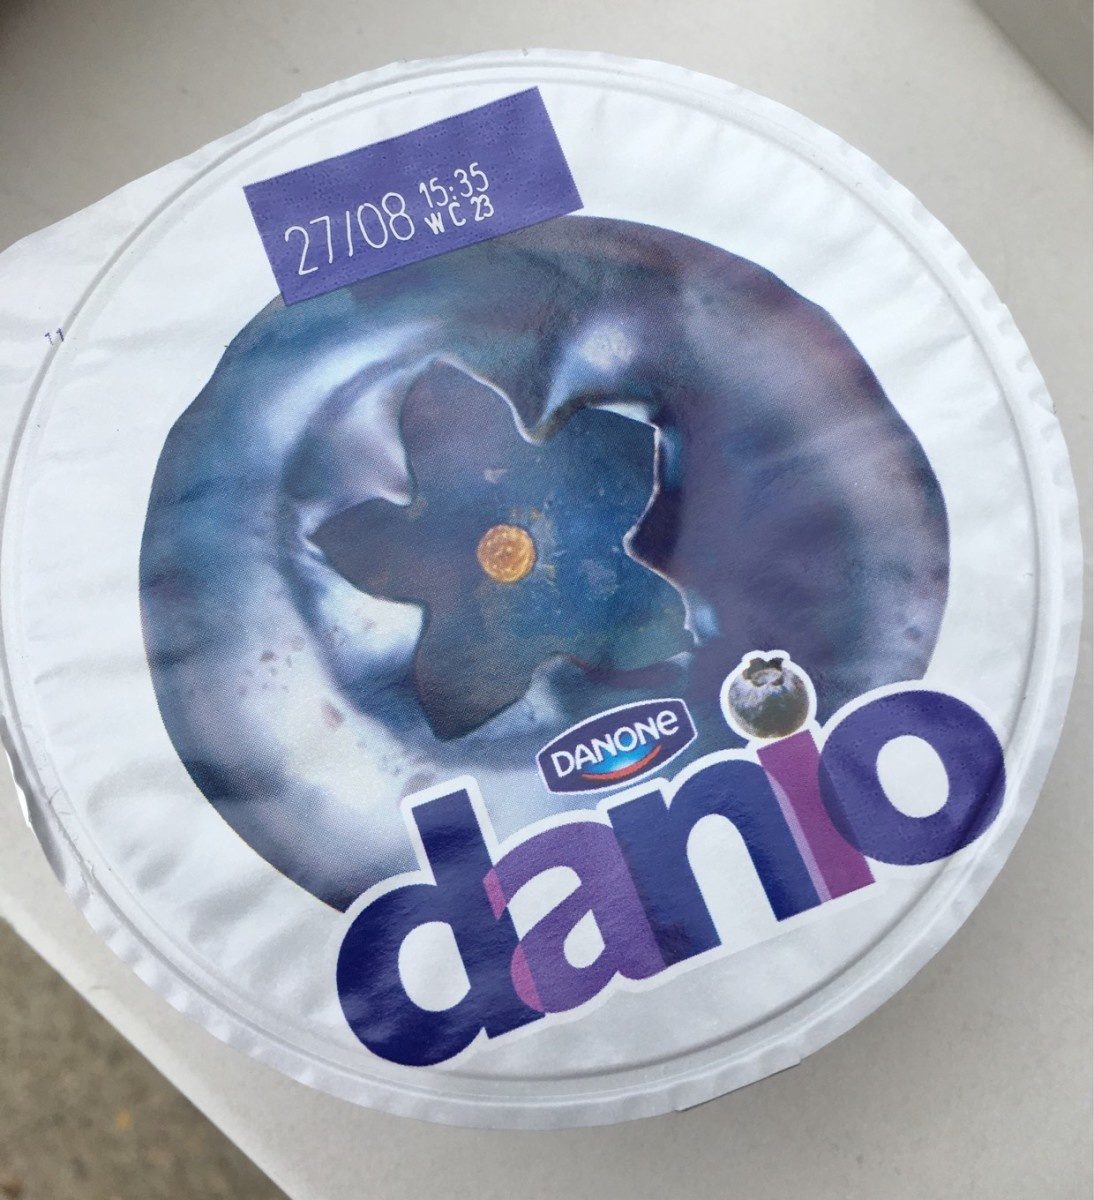 Danio Myrtille 0% - Product - fr